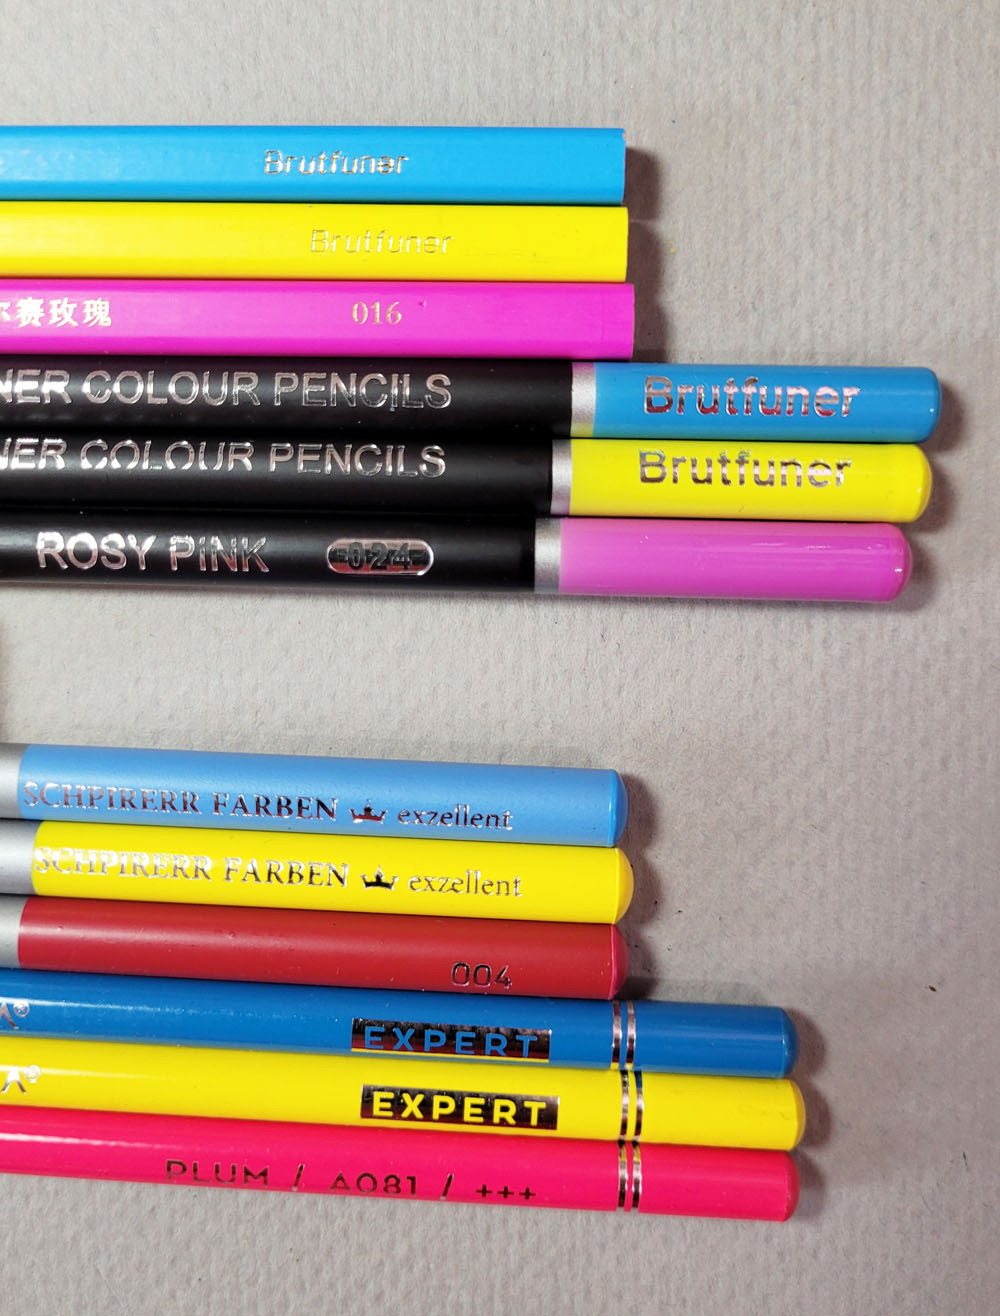 Soucolor 180 Colored Pencils Set Review